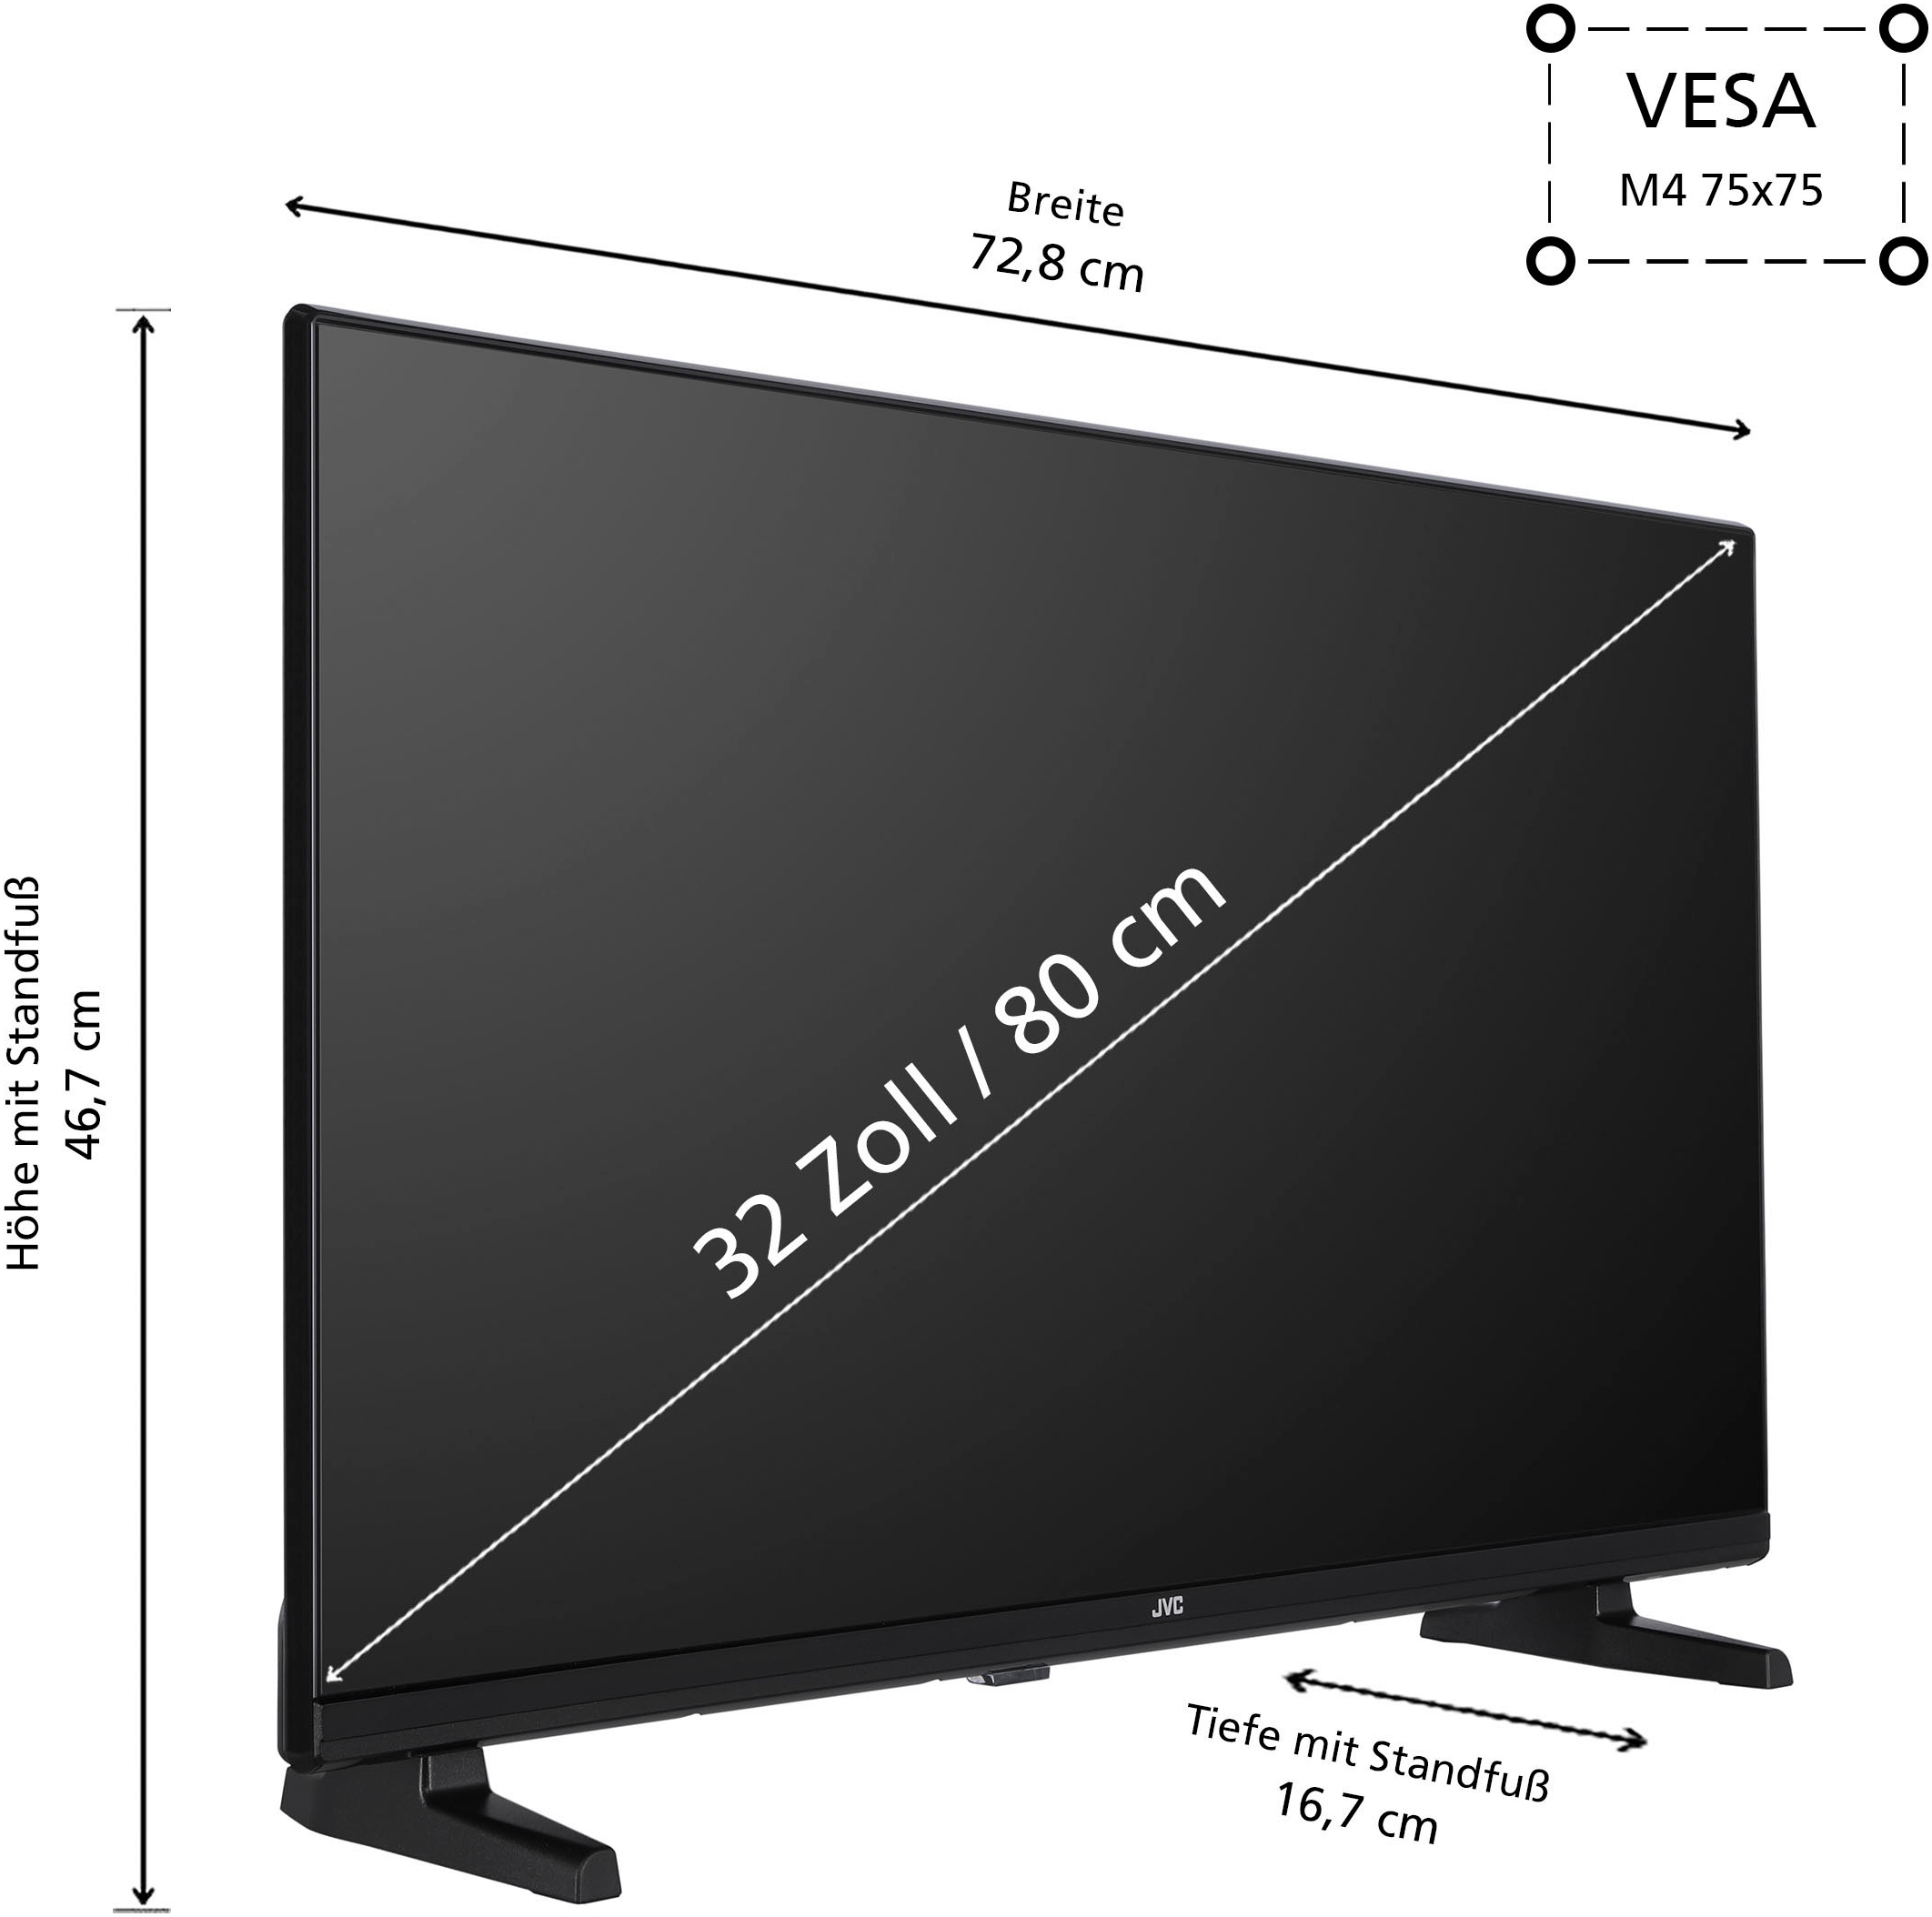 JVC LED-Fernseher, 80 cm/32 Zoll, Full HD, Smart-TV